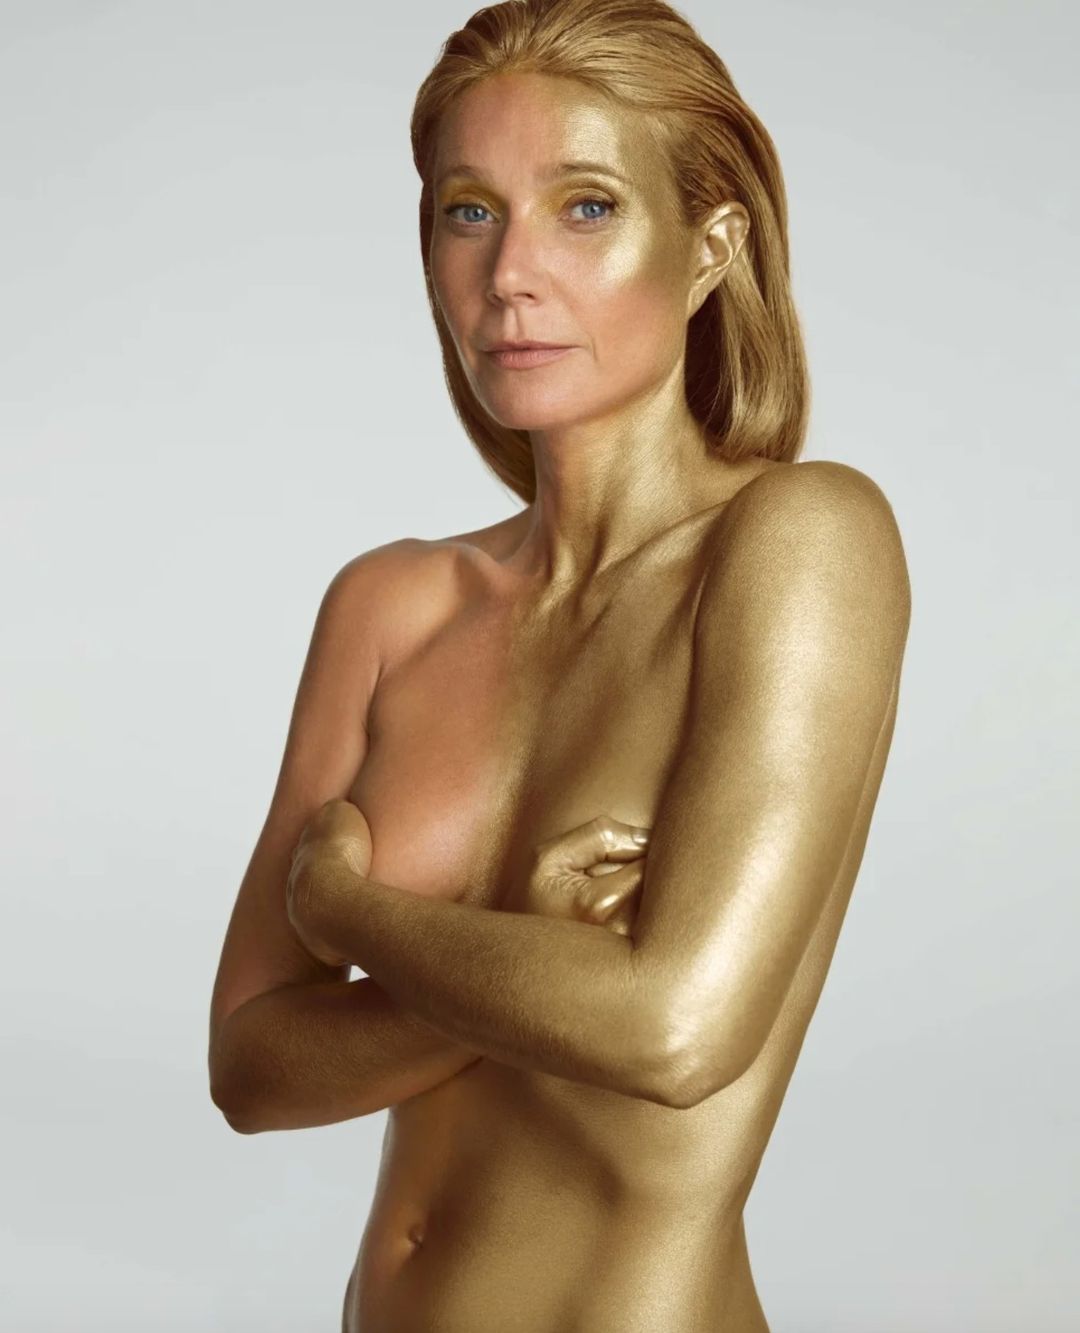 Без одежды и усыпанная золотом: Гвинет Пэлтроу на 50-й день рождения показала смелые фото